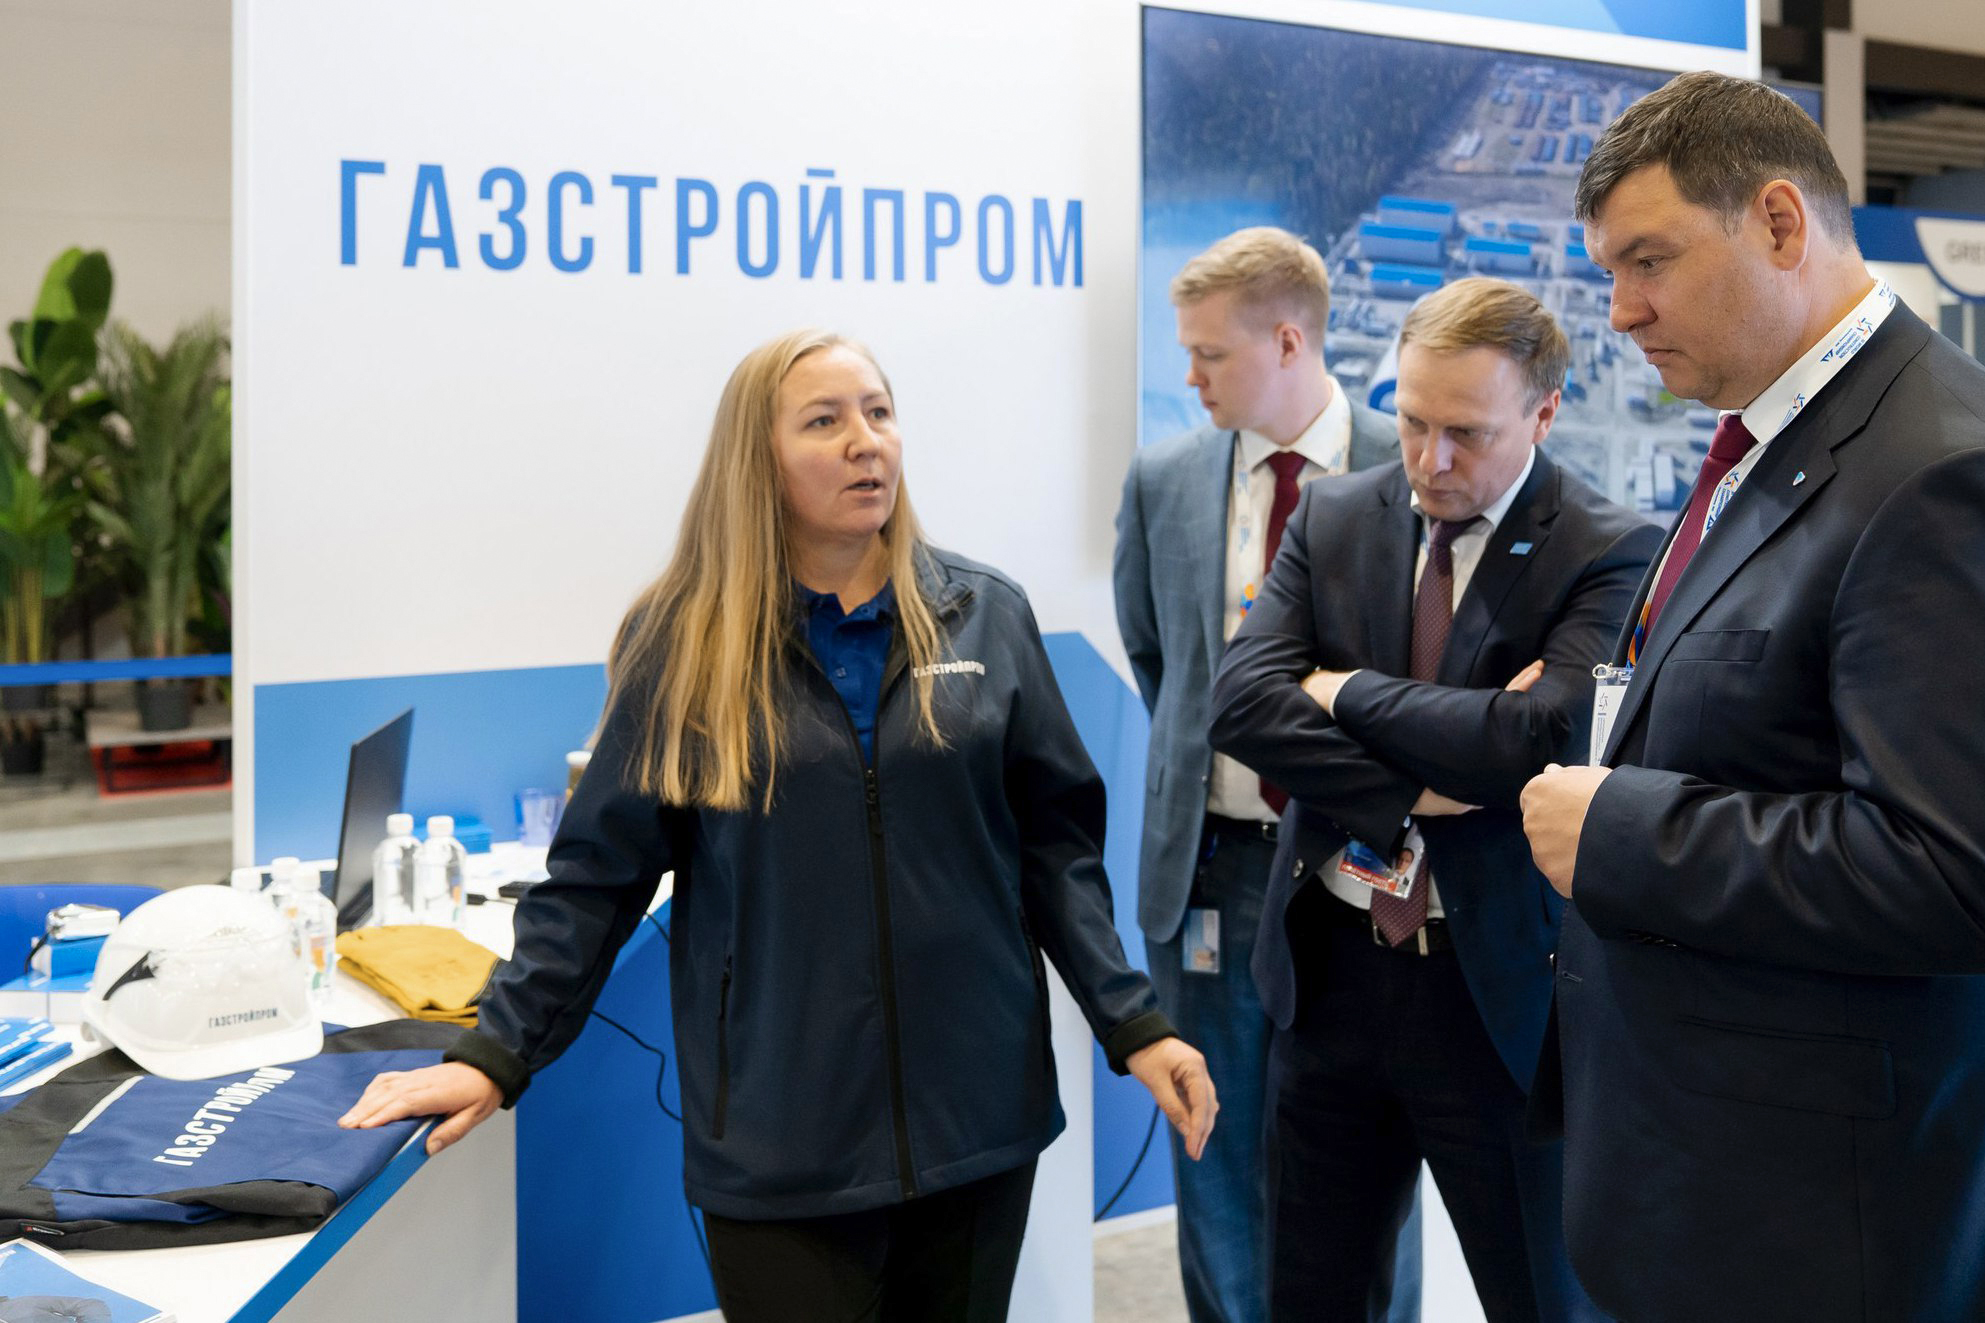 Как в «Газстройпроме» выбирают СИЗ для сотрудников